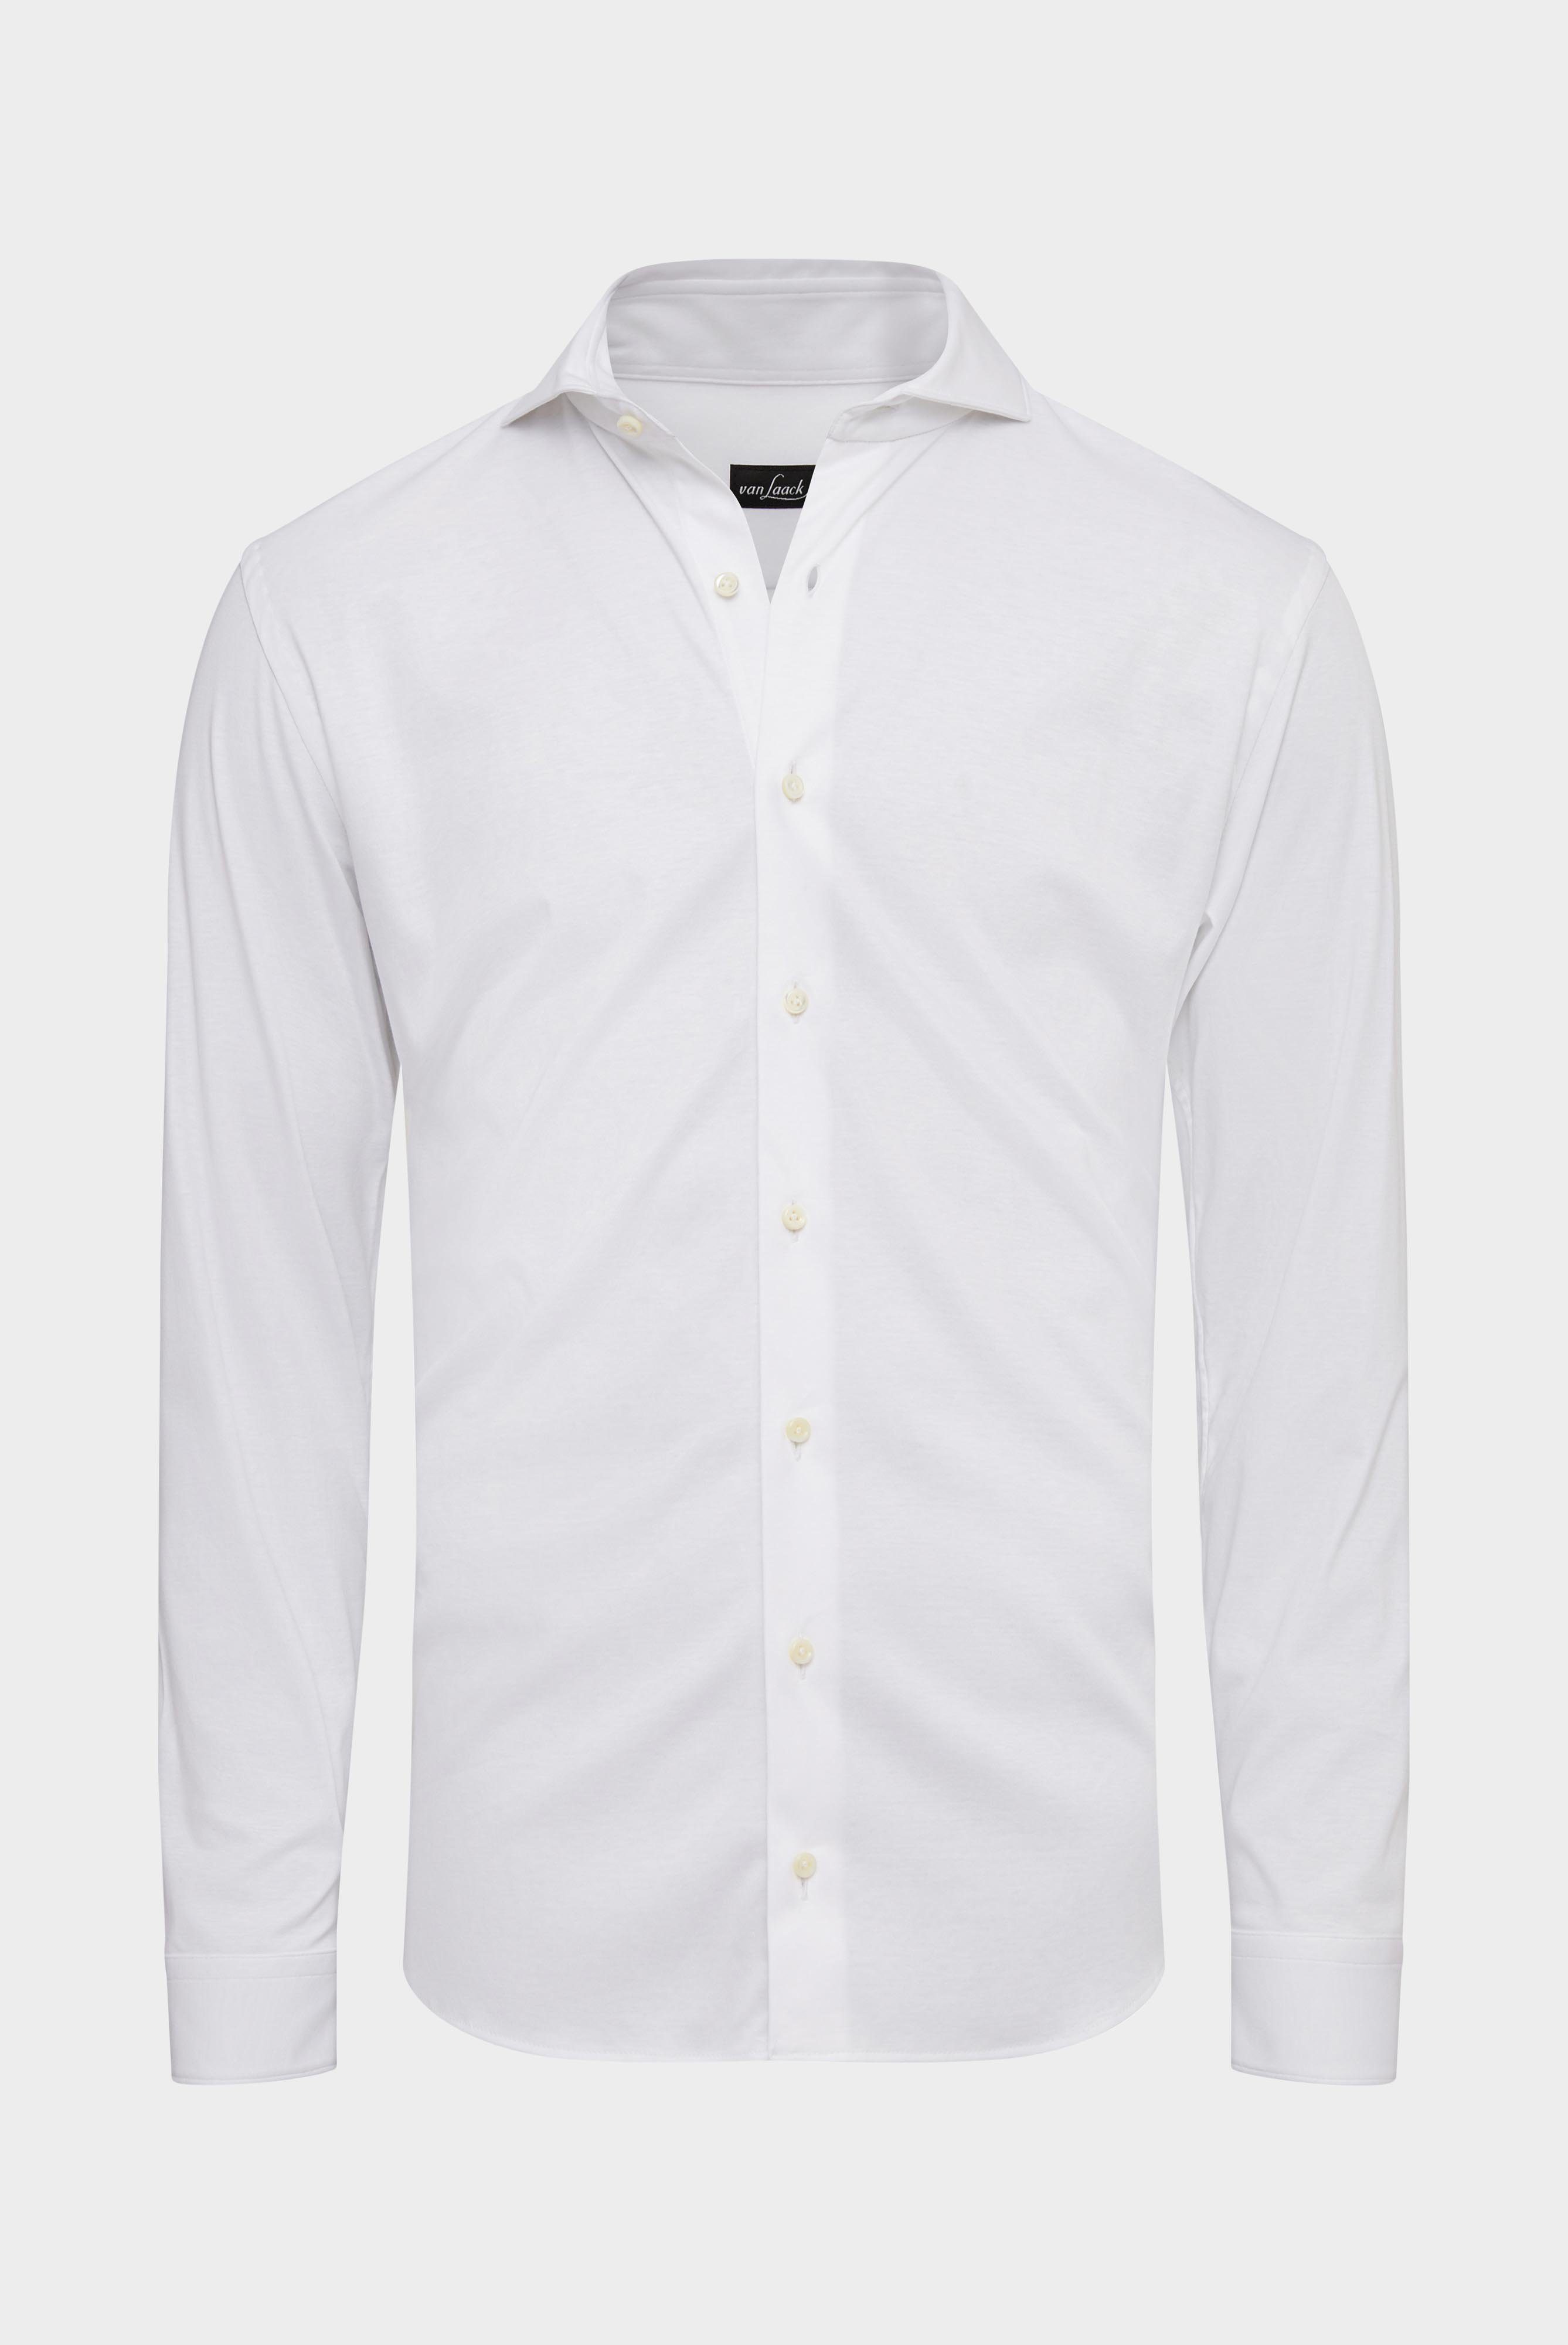 Bügelleichte Hemden+Jersey Hemd mit glänzender Optik Tailor Fit+20.1683.UC.180031.000.M